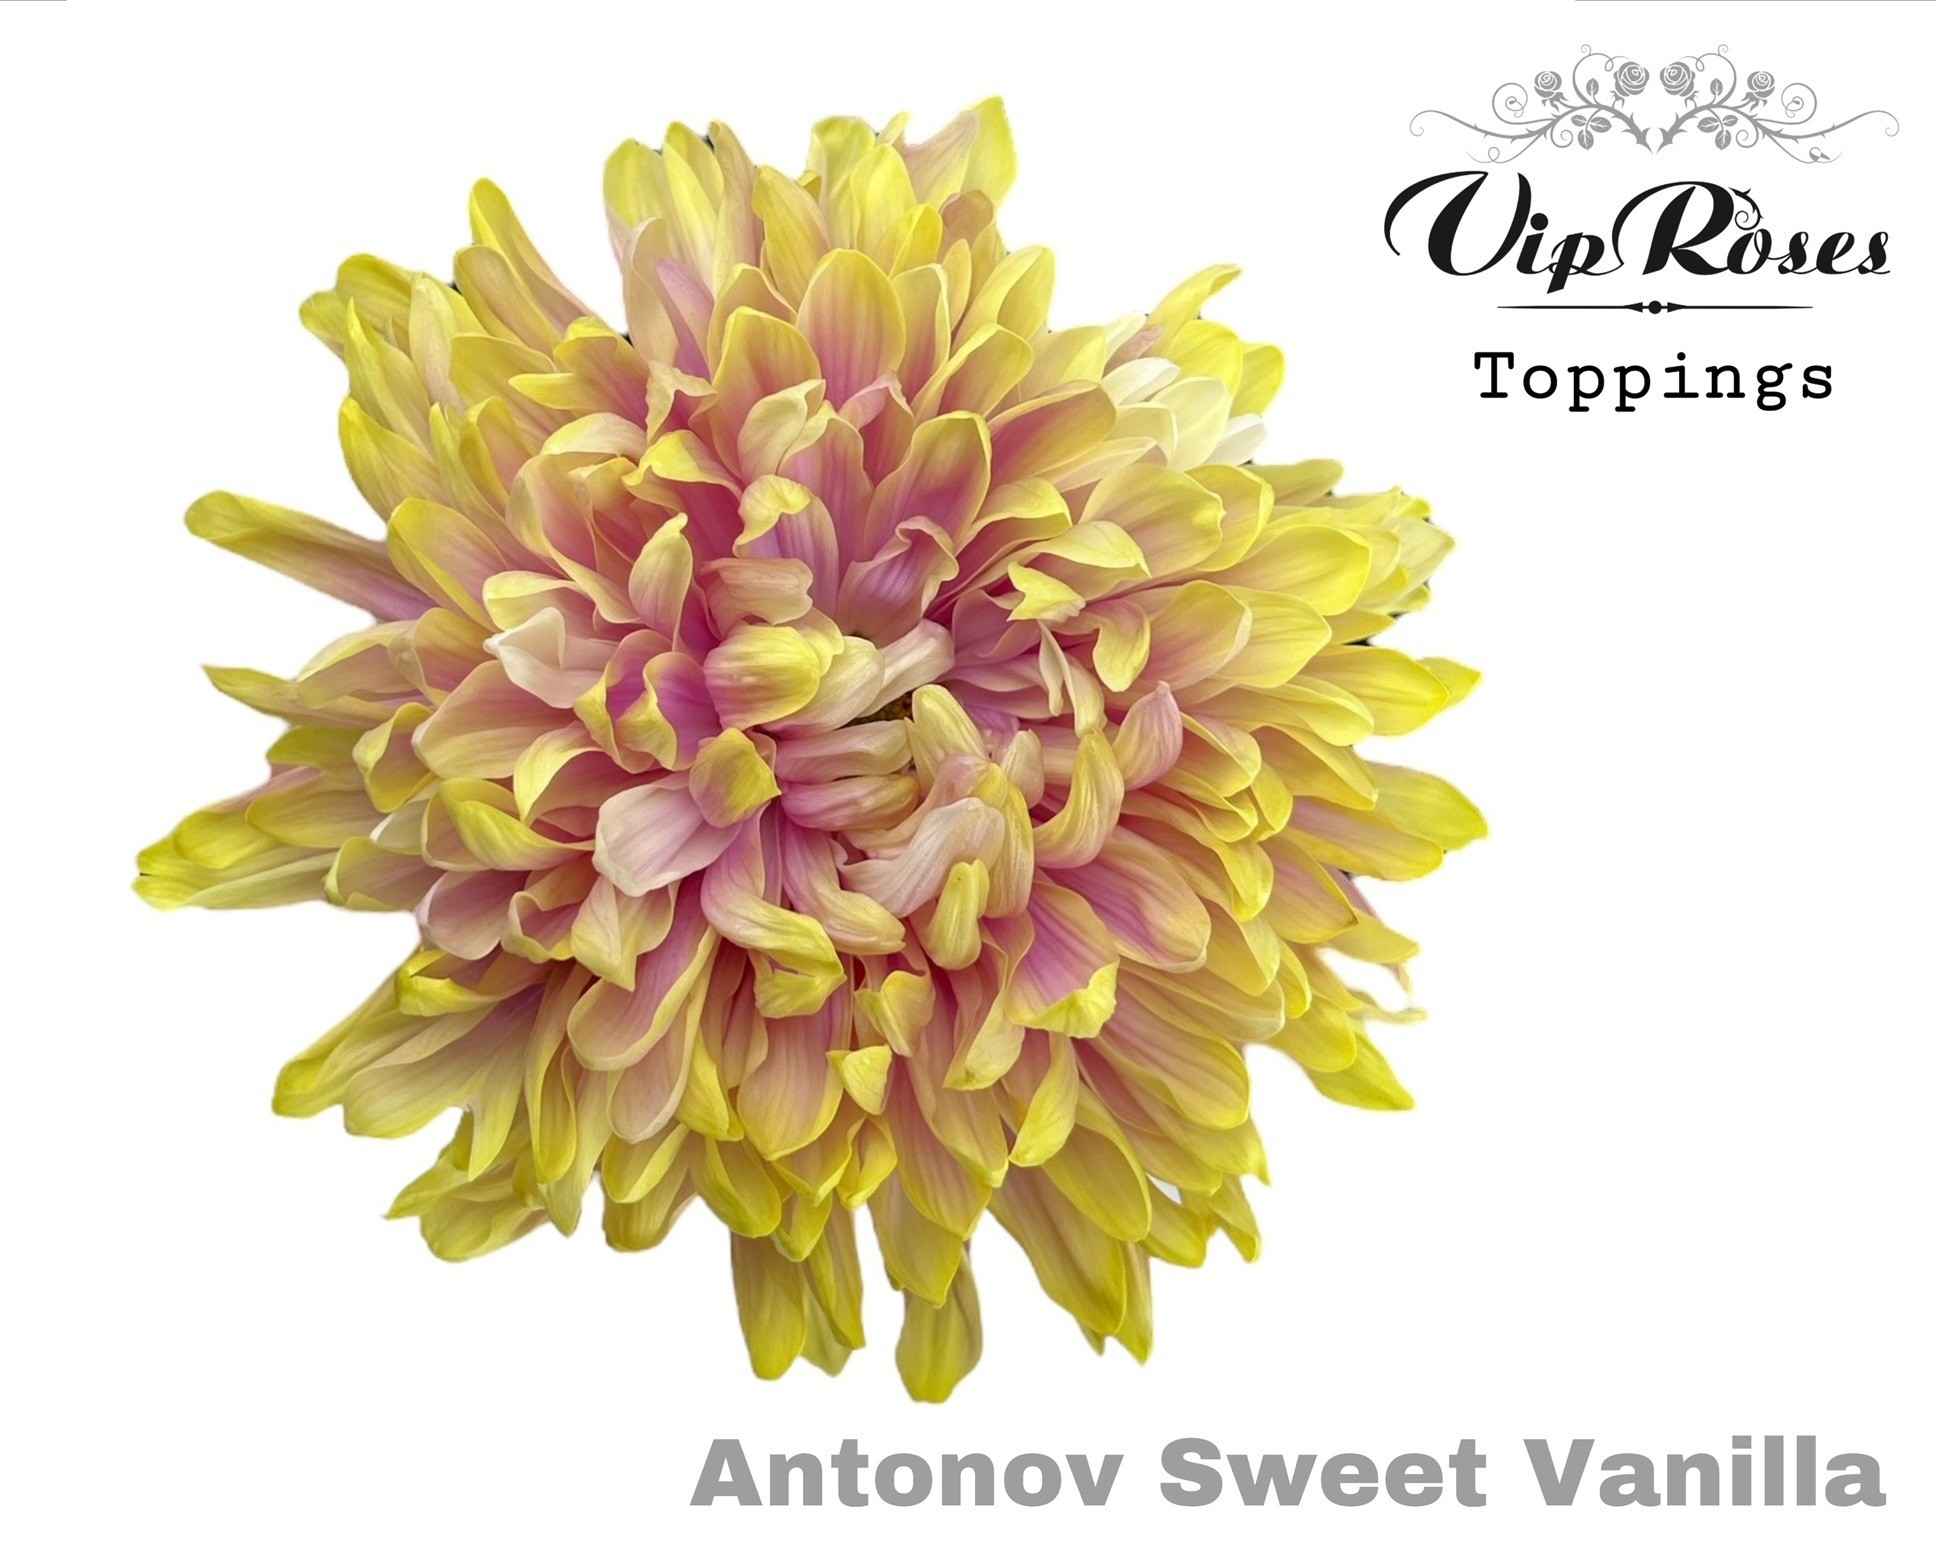 Срезанные цветы оптом Chrys bl paint antonov sweet vanilla от 20шт из Голландии с доставкой по России